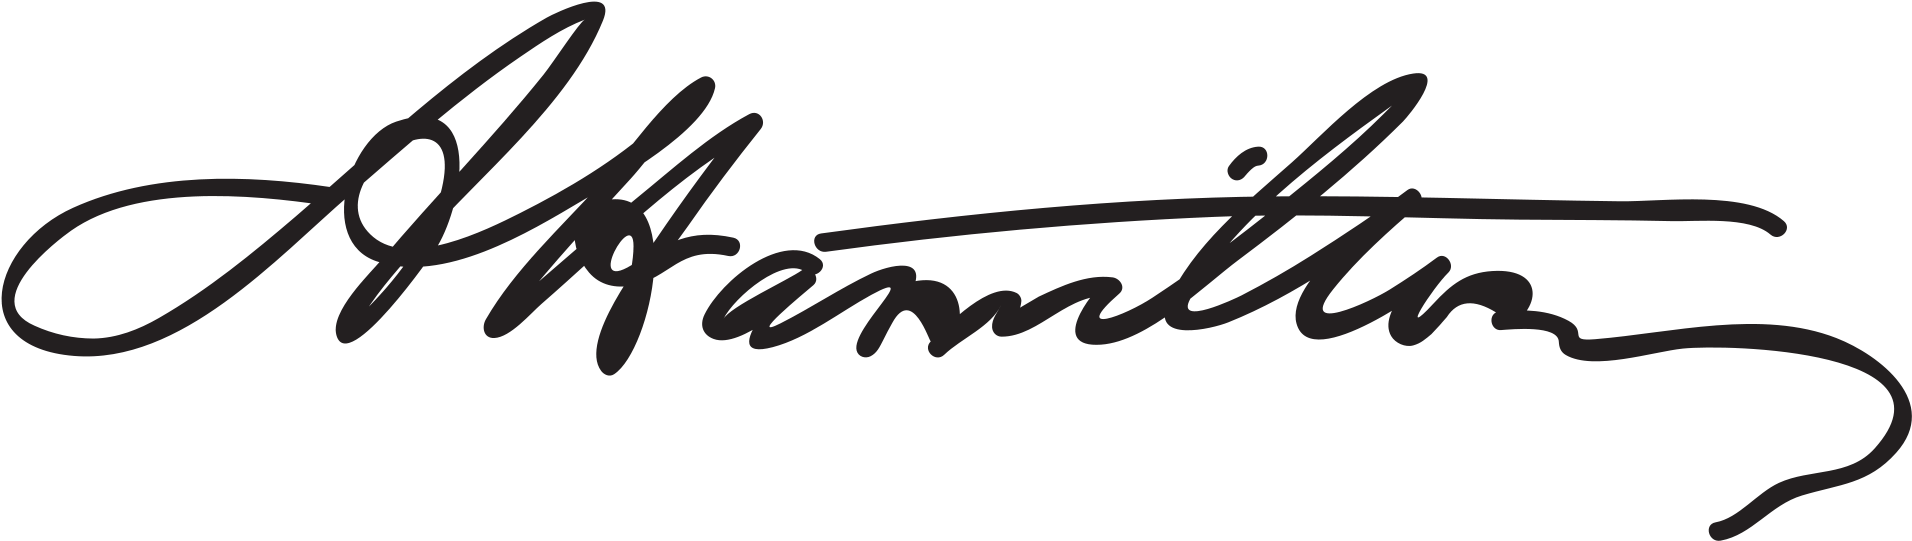 Open - Alexander Hamilton Signature (2000x620), Png Download